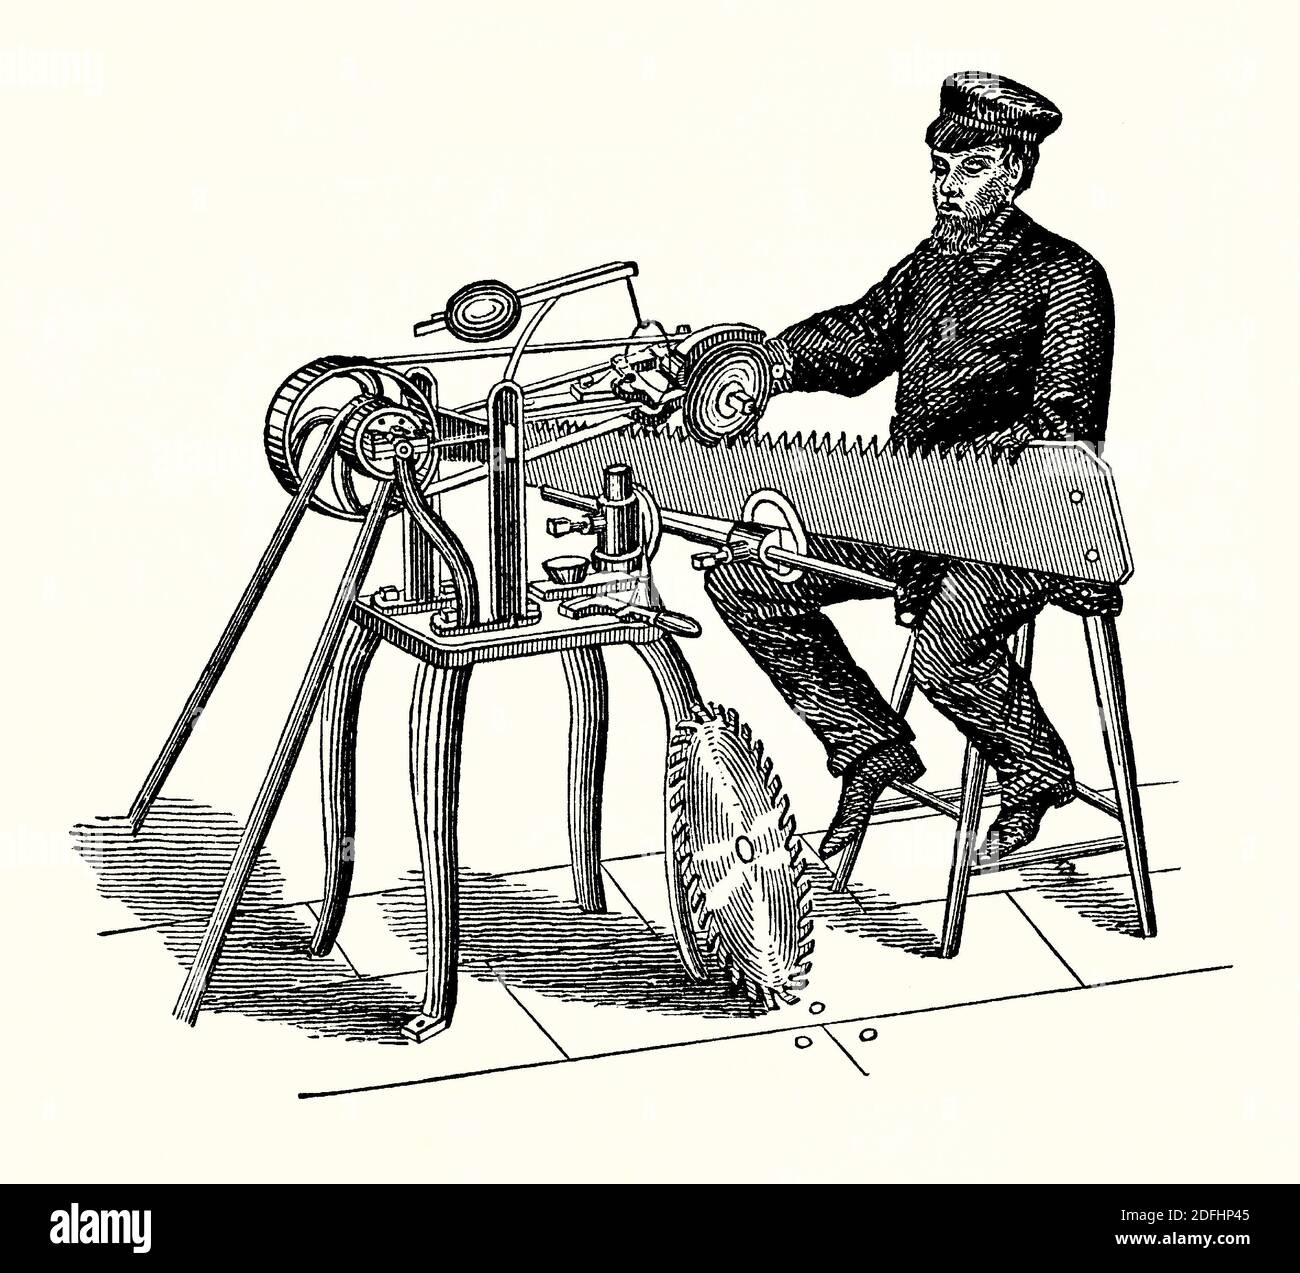 Une ancienne gravure de la scie-machine à limer. Il est issu d'un livre victorien d'ingénierie mécanique des années 1880. Cette machine à limer est entraînée par courroie. Une meule rotative peut être réglée par l'utilisateur pour atteindre la scie à l'angle correct. Une lime est utilisée pour supprimer de fines quantités de matériau d'un outil afin de le maintenir aiguisé. Un déclarant de scie ou un médecin de scie est une personne de métier qui entretient et répare les scies. Il exige un haut degré de compétence. La mise à niveau, la tension et le bennage sont trois des techniques utilisées. Banque D'Images